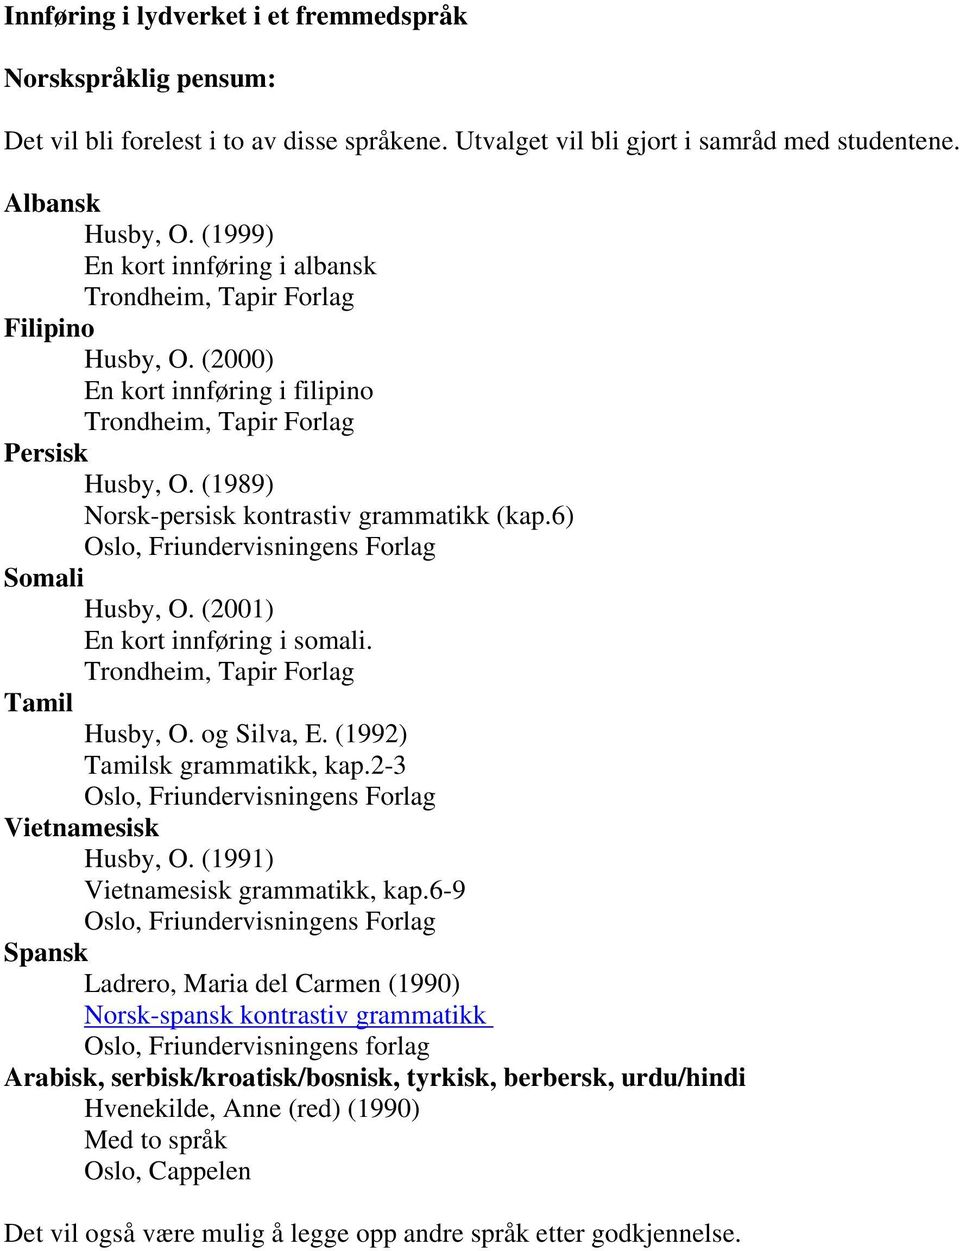 (1989) Norsk-persisk kontrastiv grammatikk (kap.6) Oslo, Friundervisningens Forlag Somali Husby, O. (2001) En kort innføring i somali. Trondheim, Tapir Forlag Tamil Husby, O. og Silva, E.